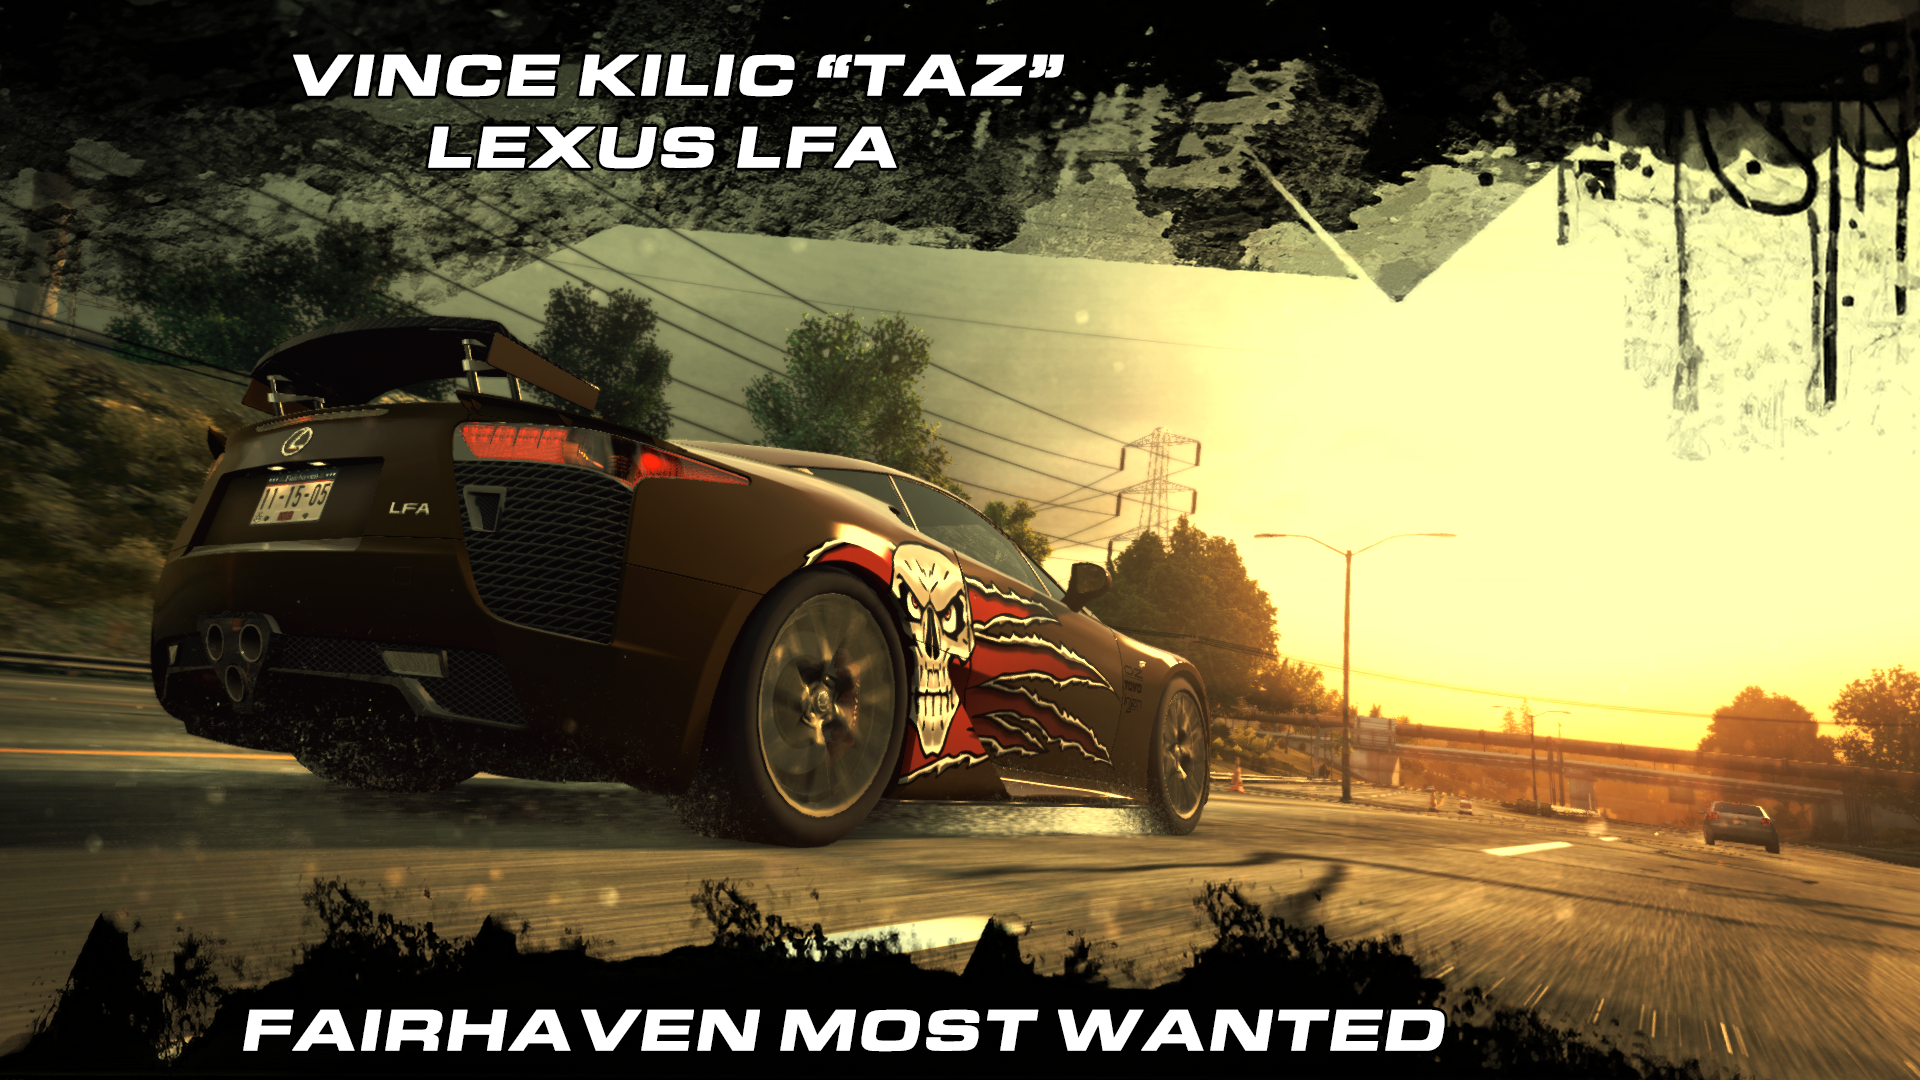 Lexus Vince Kilic "Taz" LFA